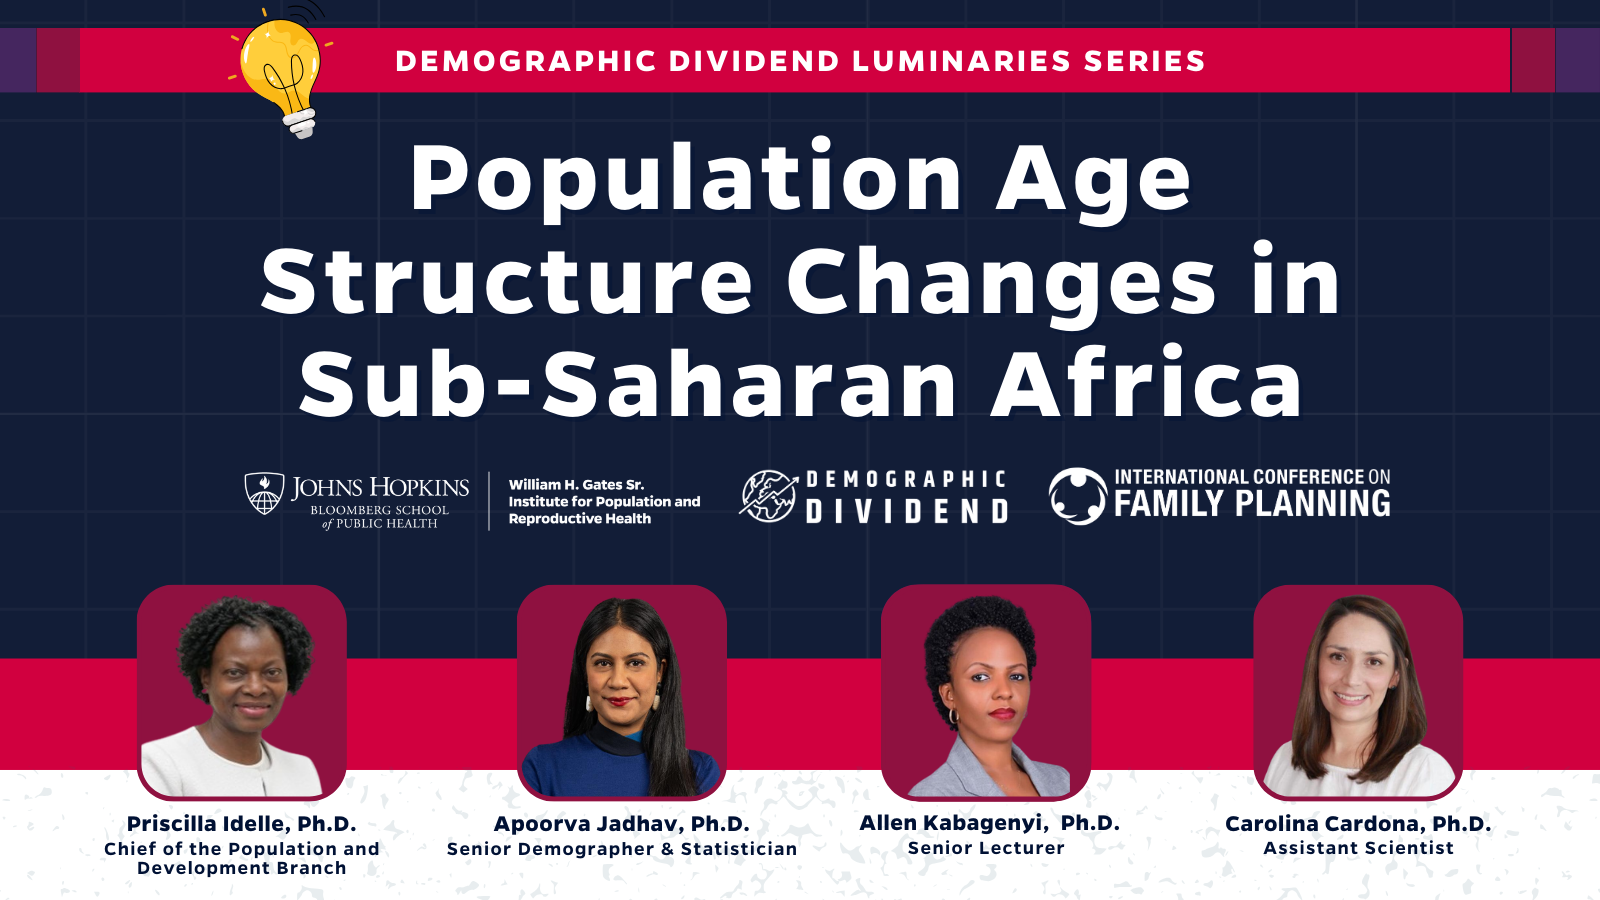 A VOIR MAINTENANT : Webinaire du Dividende démographique sur les changements de la structure par âge de la population en Afrique subsaharienne